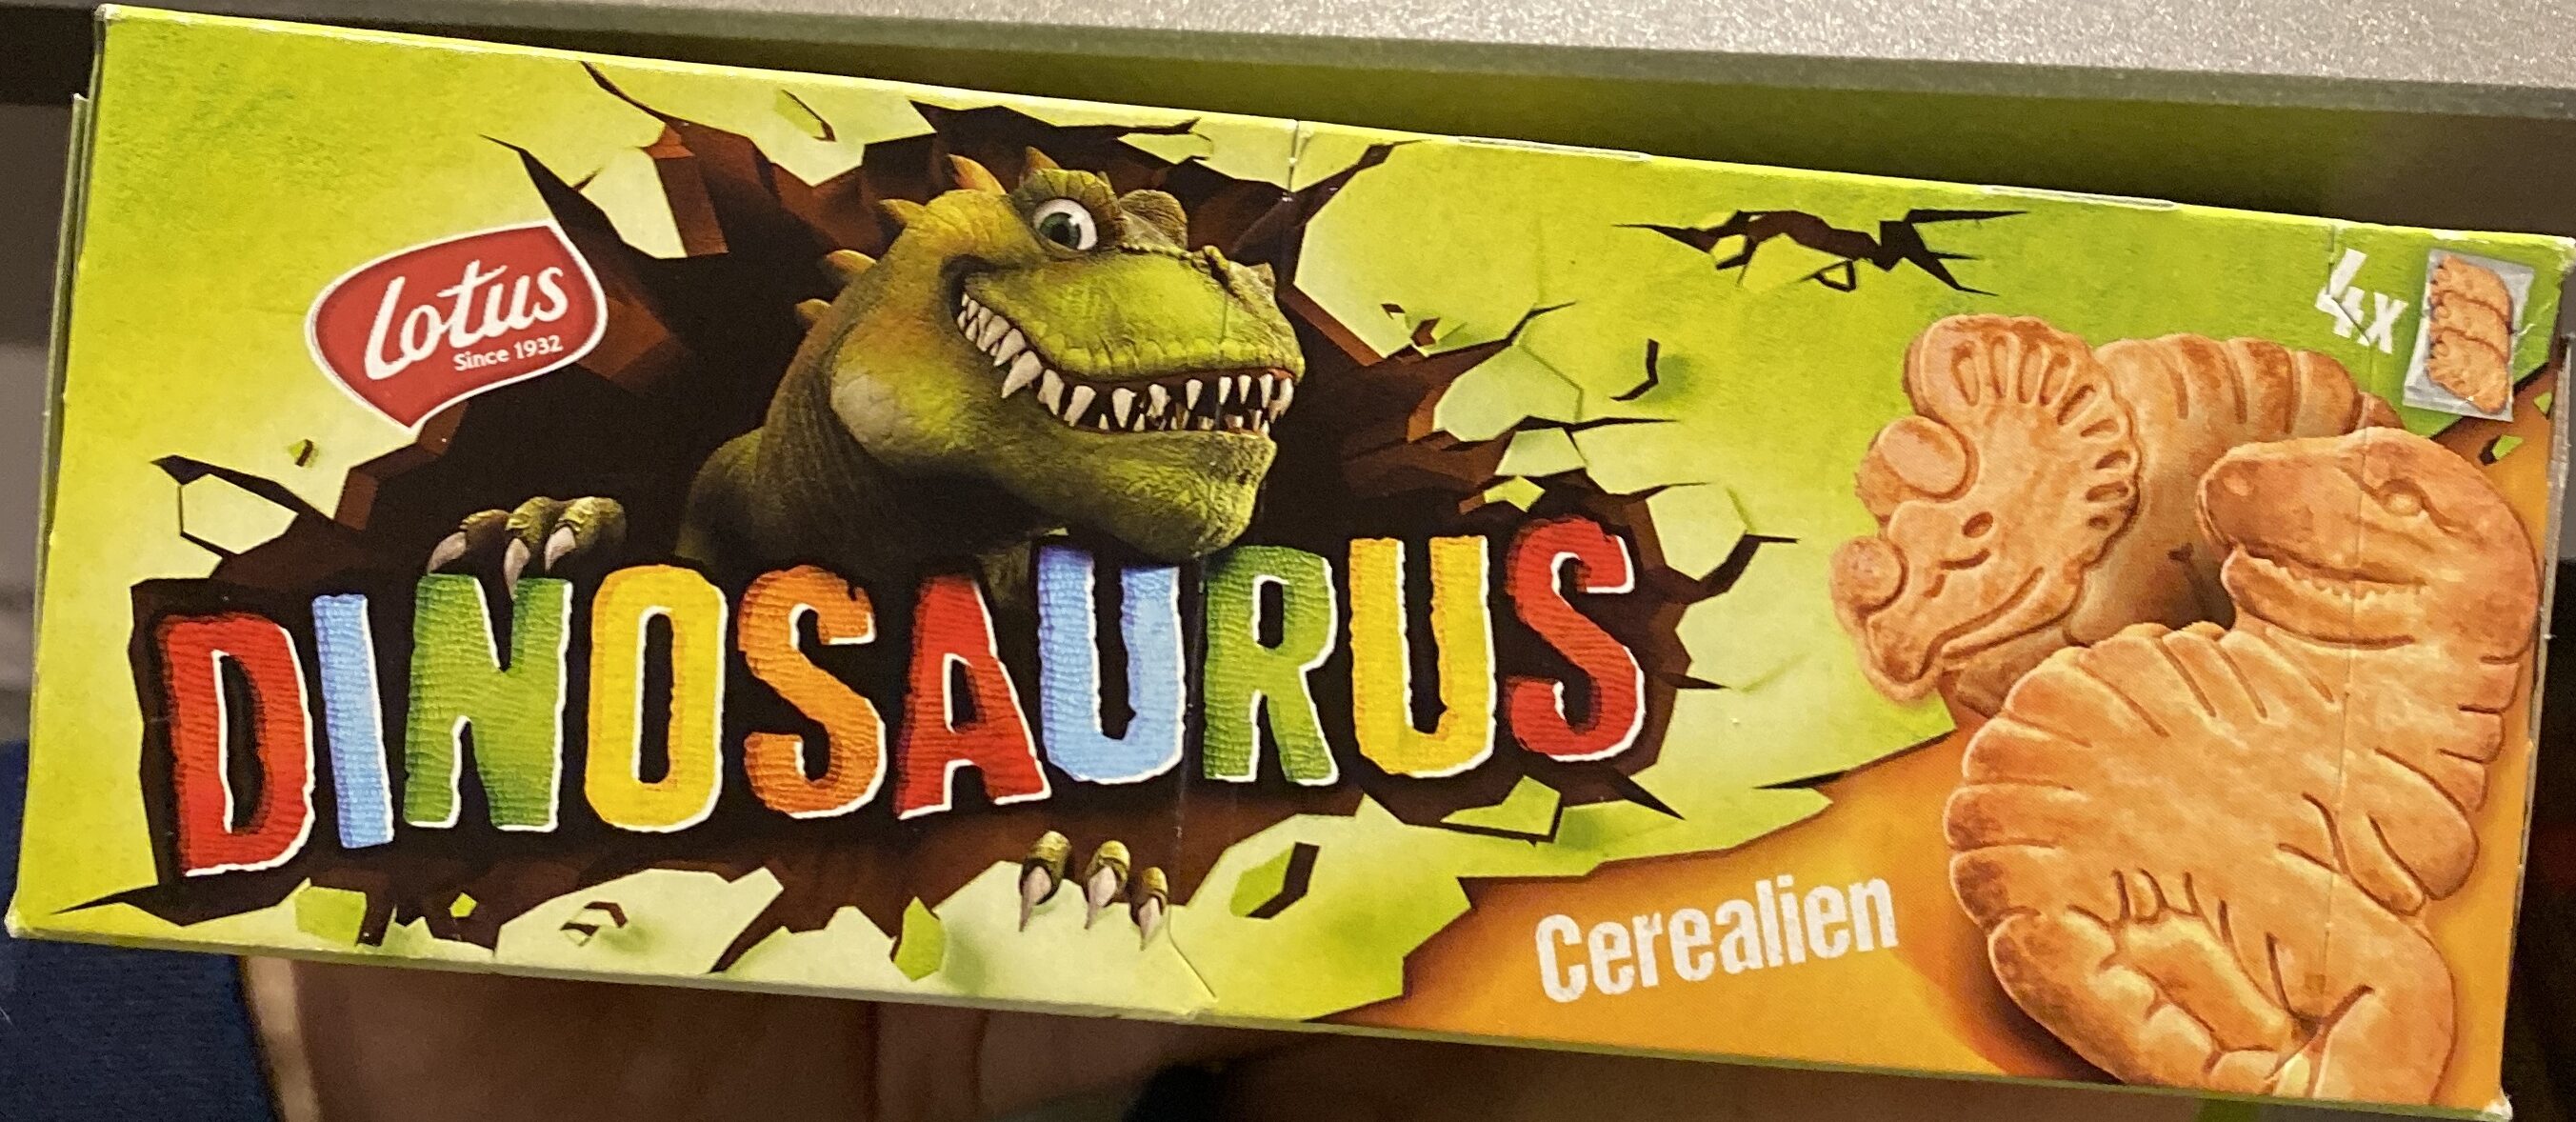 Dinosaurus Cerealien - Produkt - en